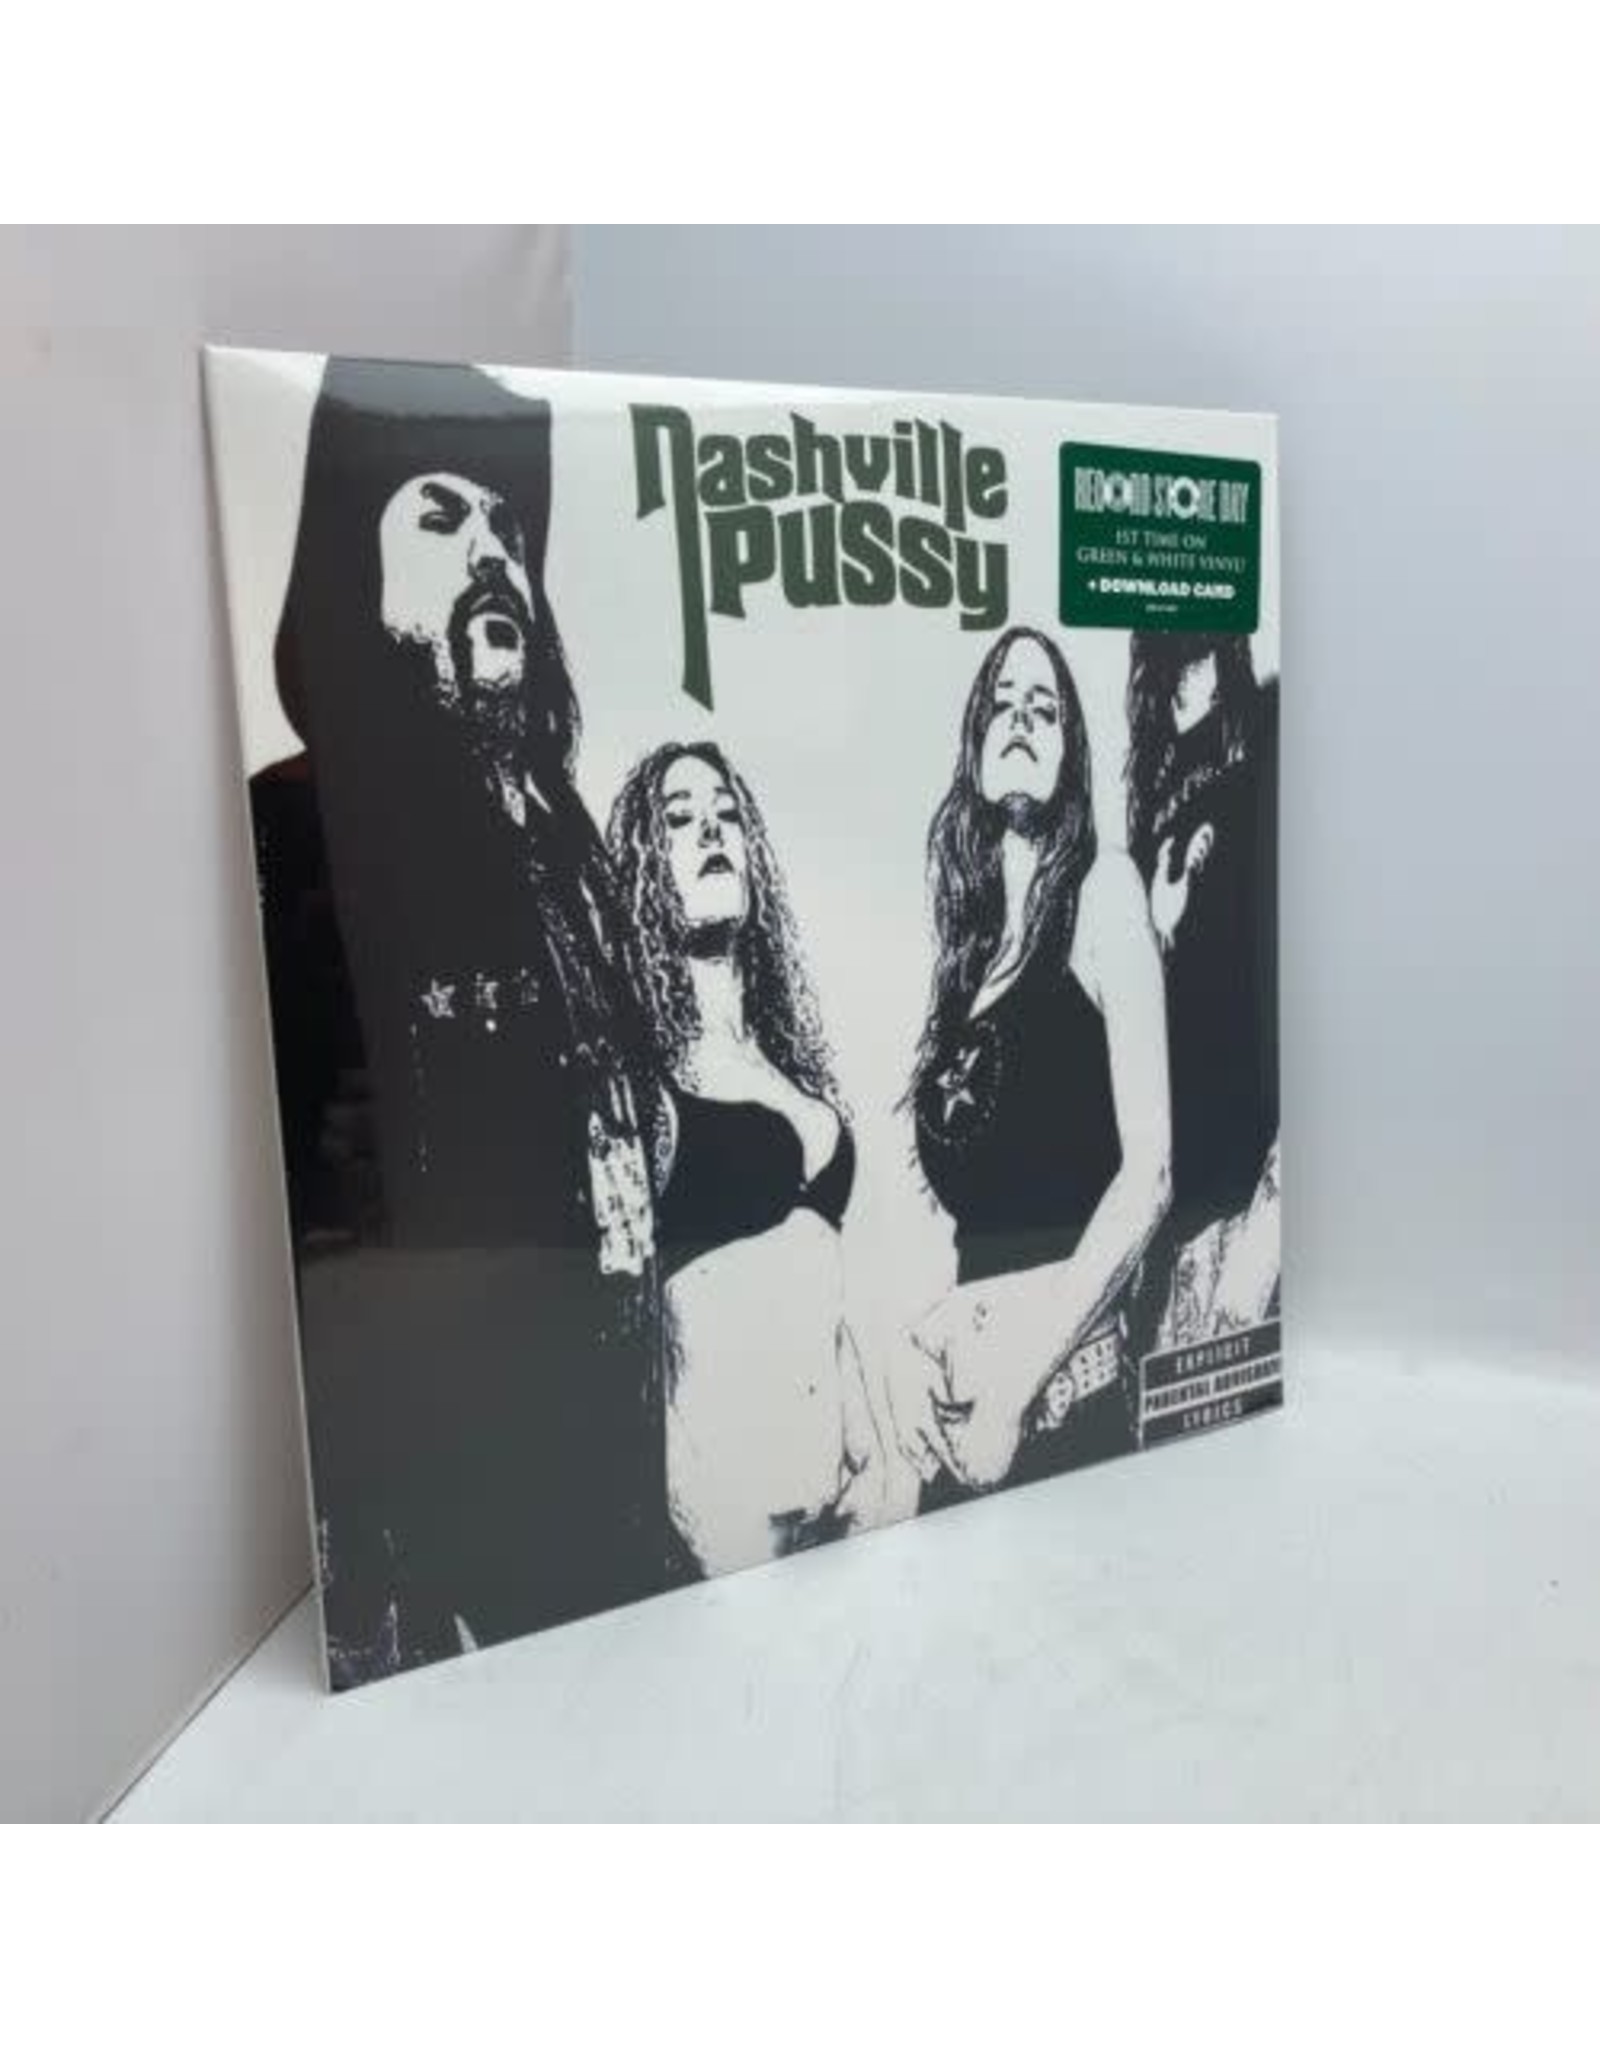 Nashville Pussy - Say Something Nasty (Green and White Vinyl) LP